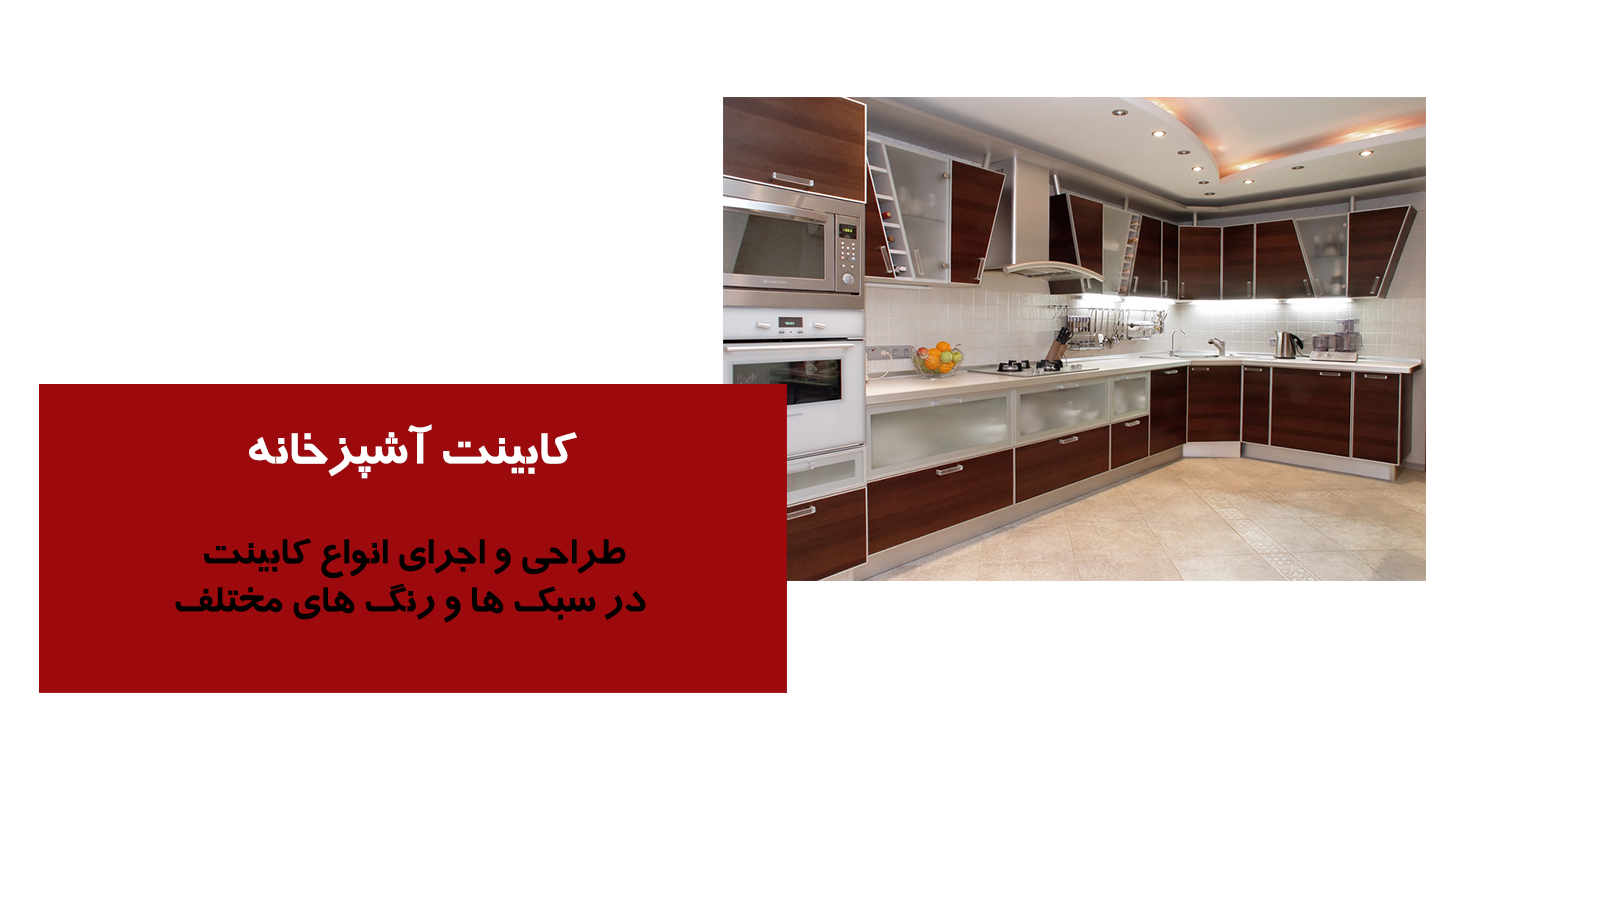 طراحی و اجرای انواع کابینت آشپزخانه در سبک ها و رنگ های متنوع در استان بوشهر